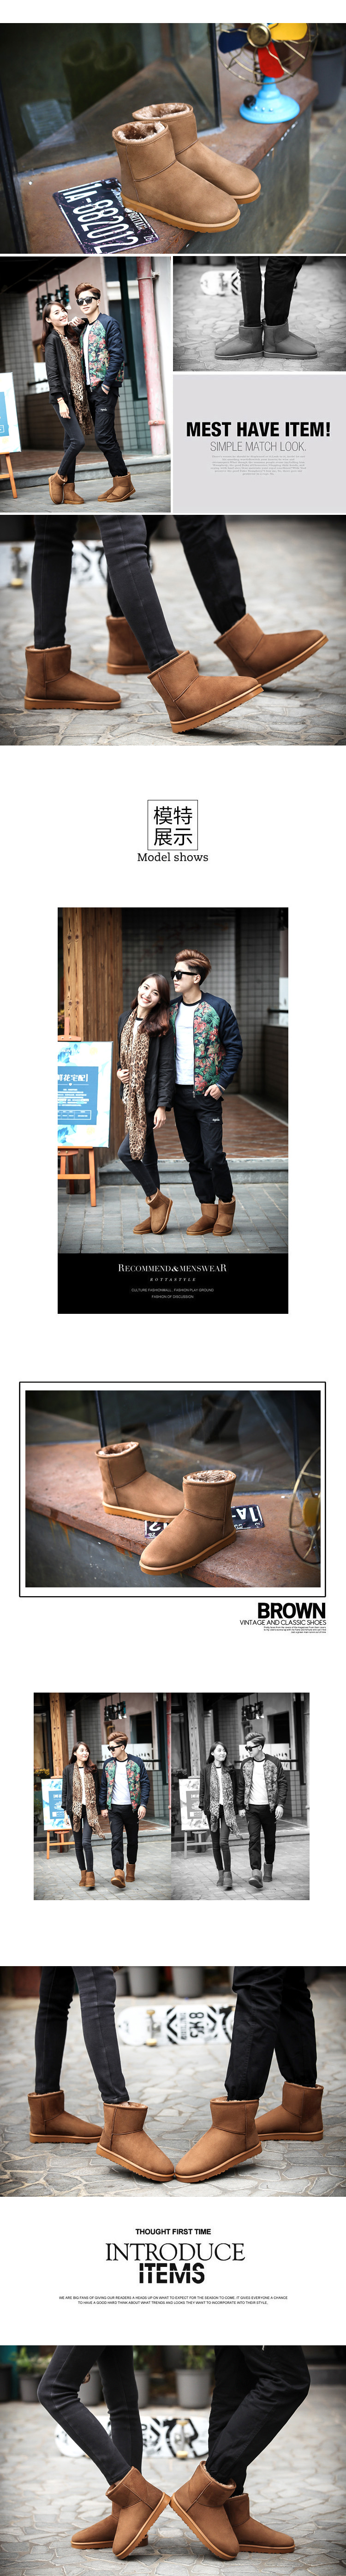 Boots - chaussures en suède ronde pour hiver - tendance des jeunes - semelle caoutchouc - Ref 950592 Image 9